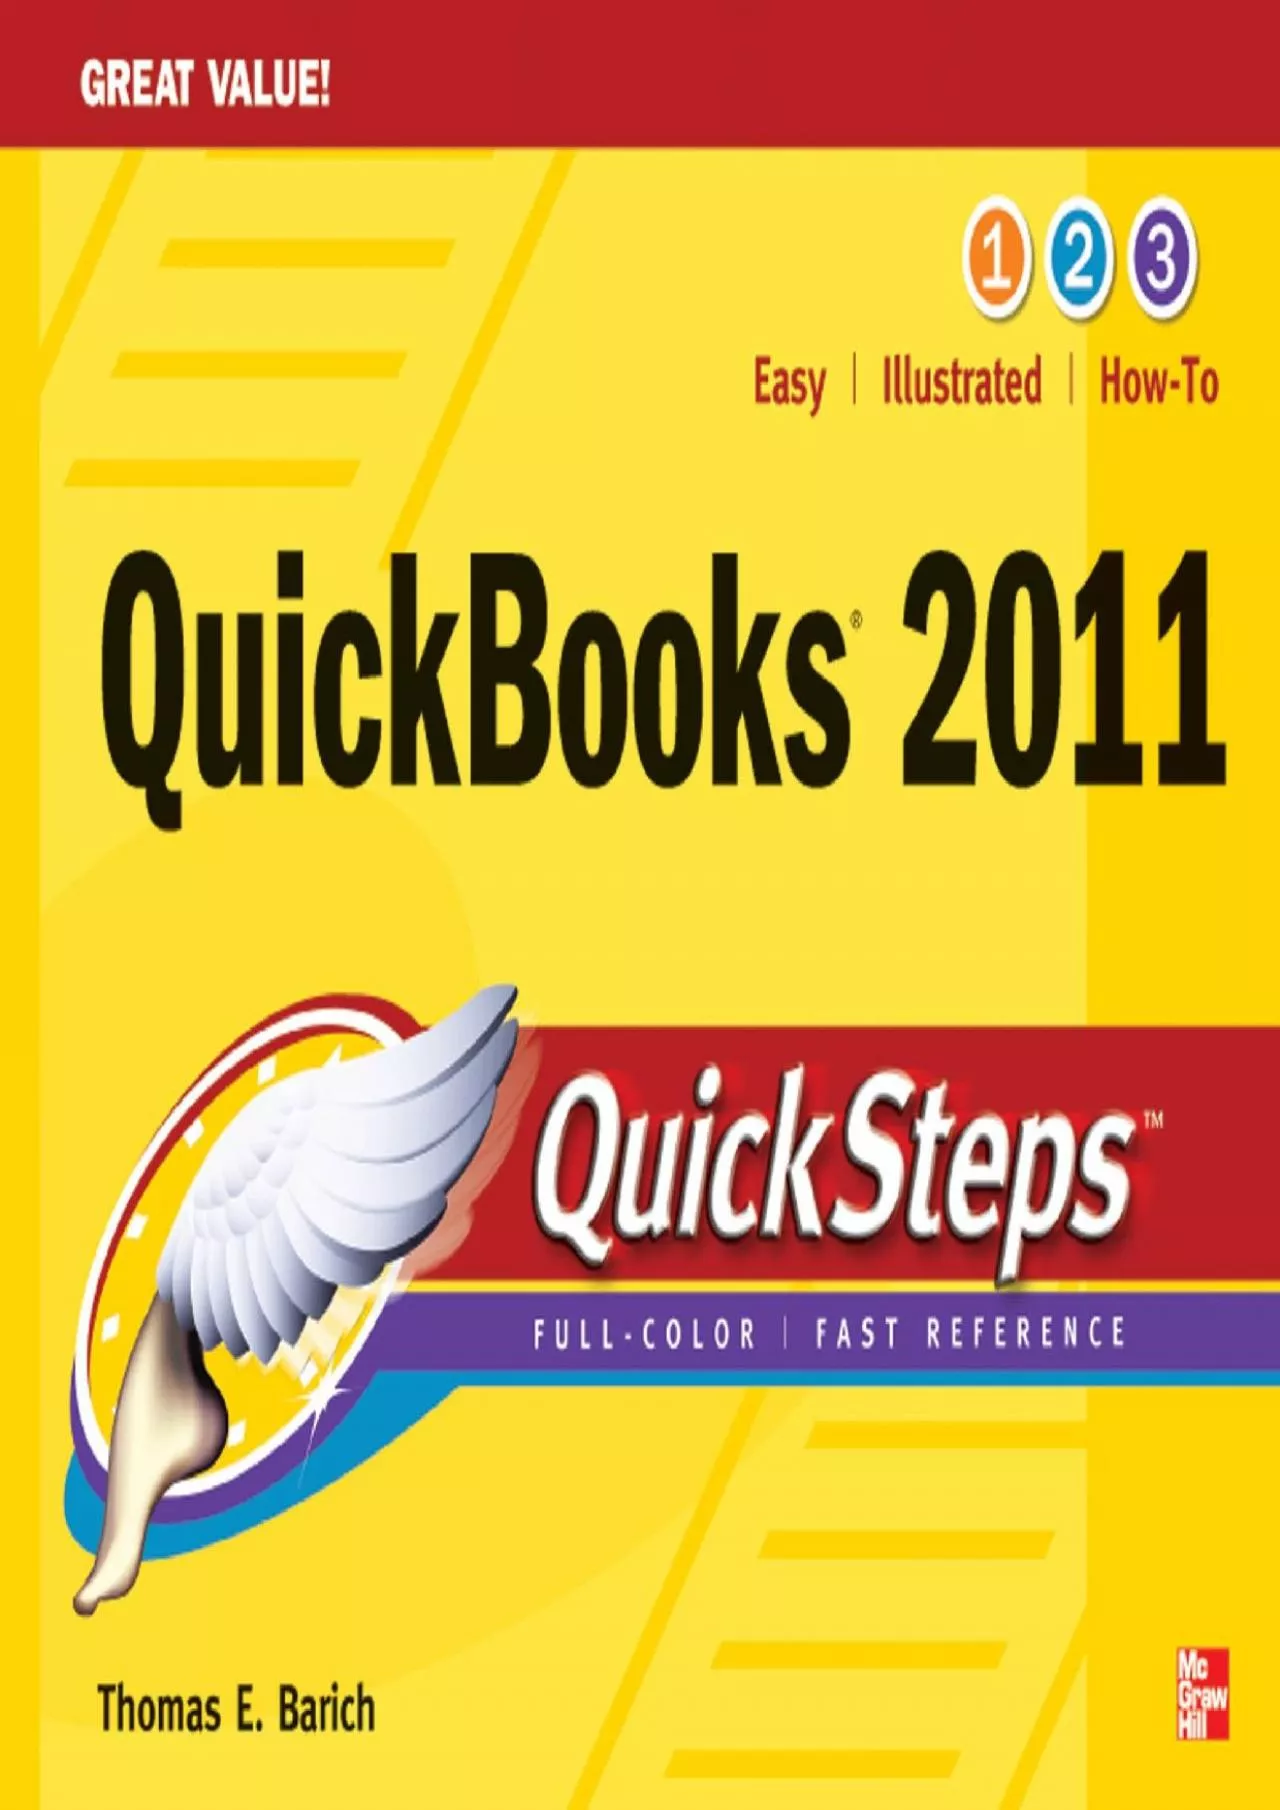 (EBOOK)-QuickBooks 2011 QuickSteps